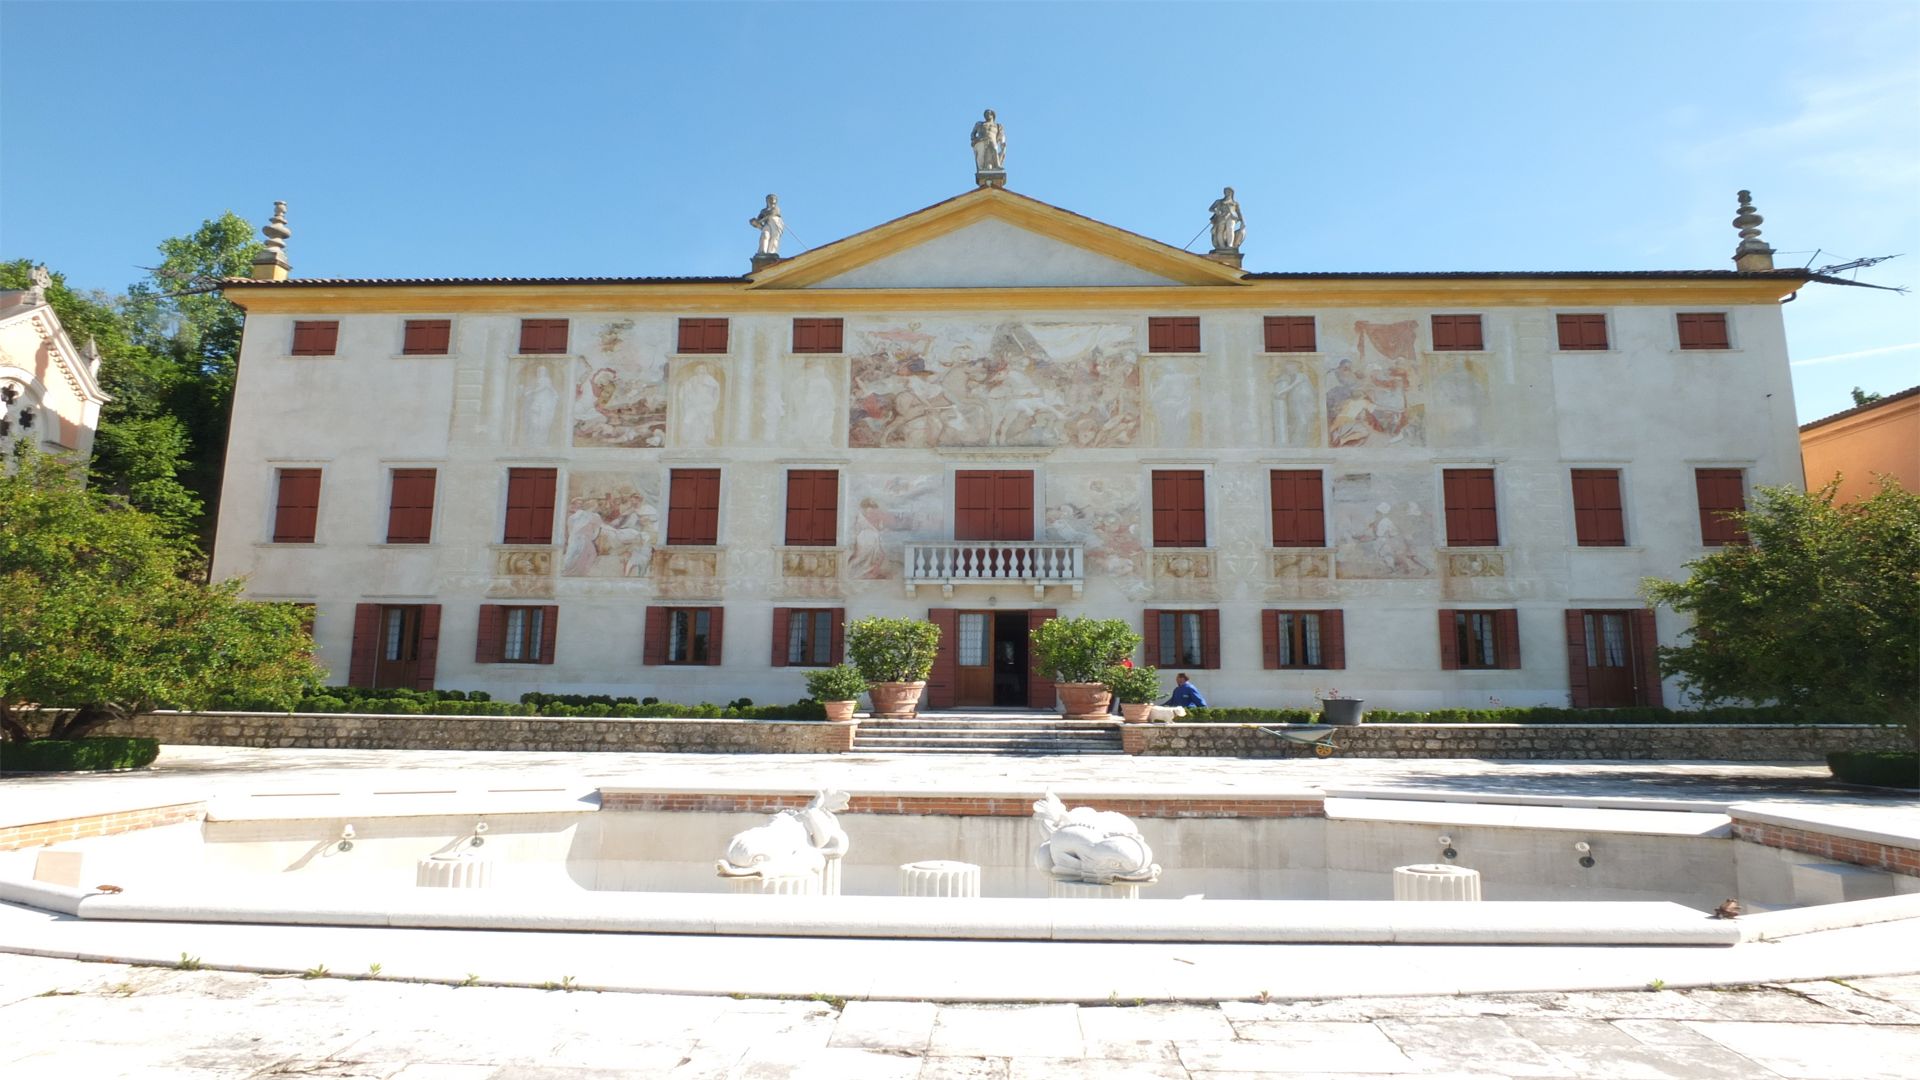 Villa Contarini detta Degli Armeni